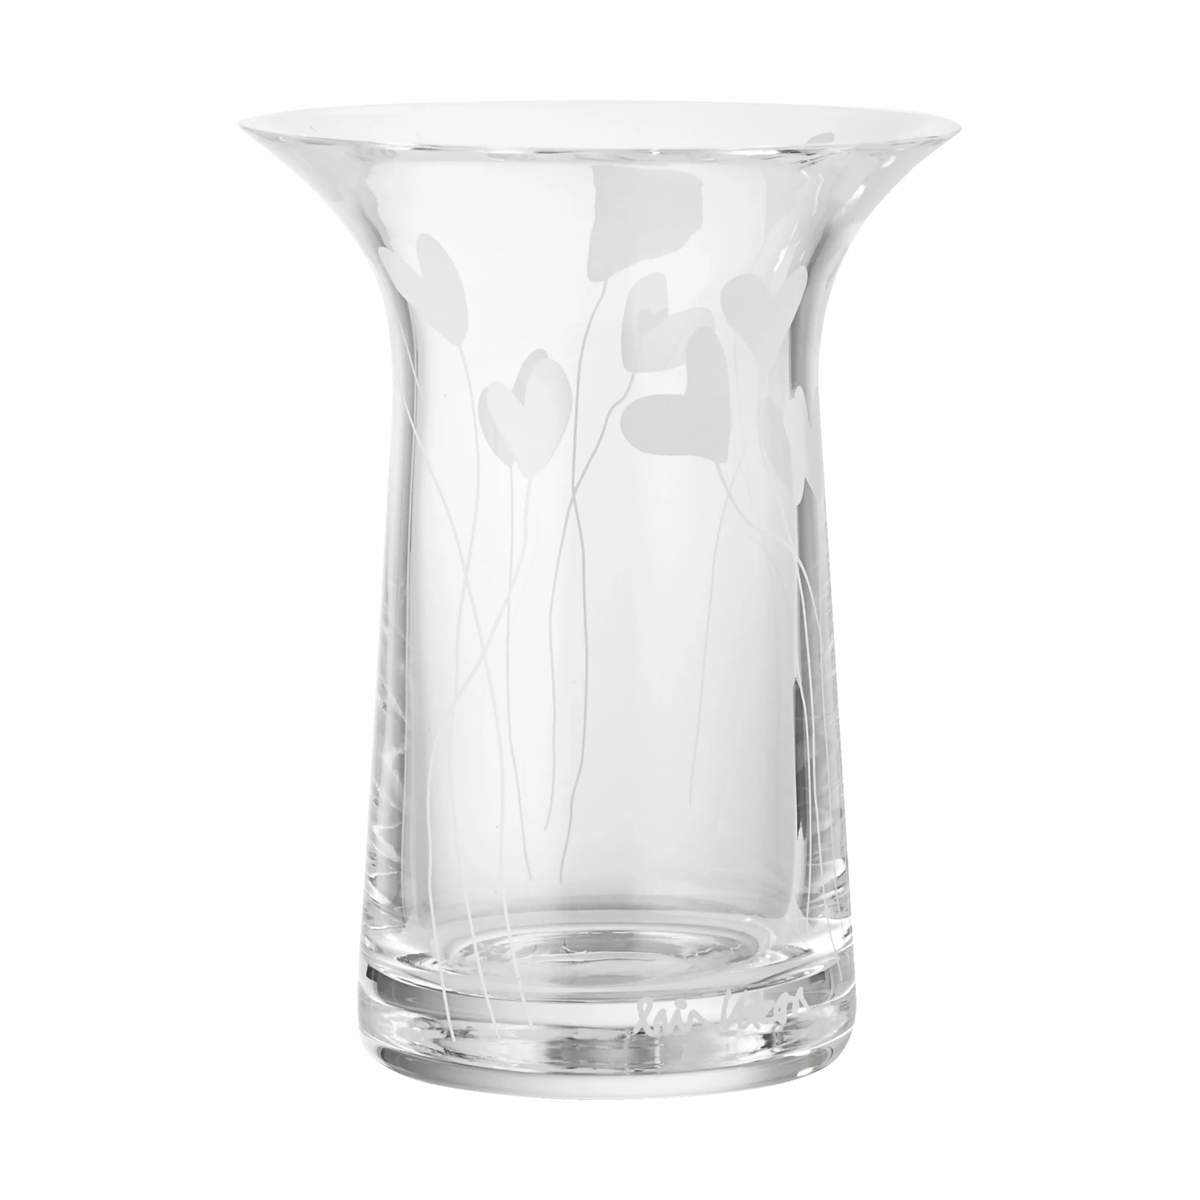 Retouch sendt Hændelse, begivenhed Rosendahl - Filigran Vase - H 16 cm - Glas - Klar | Imerco